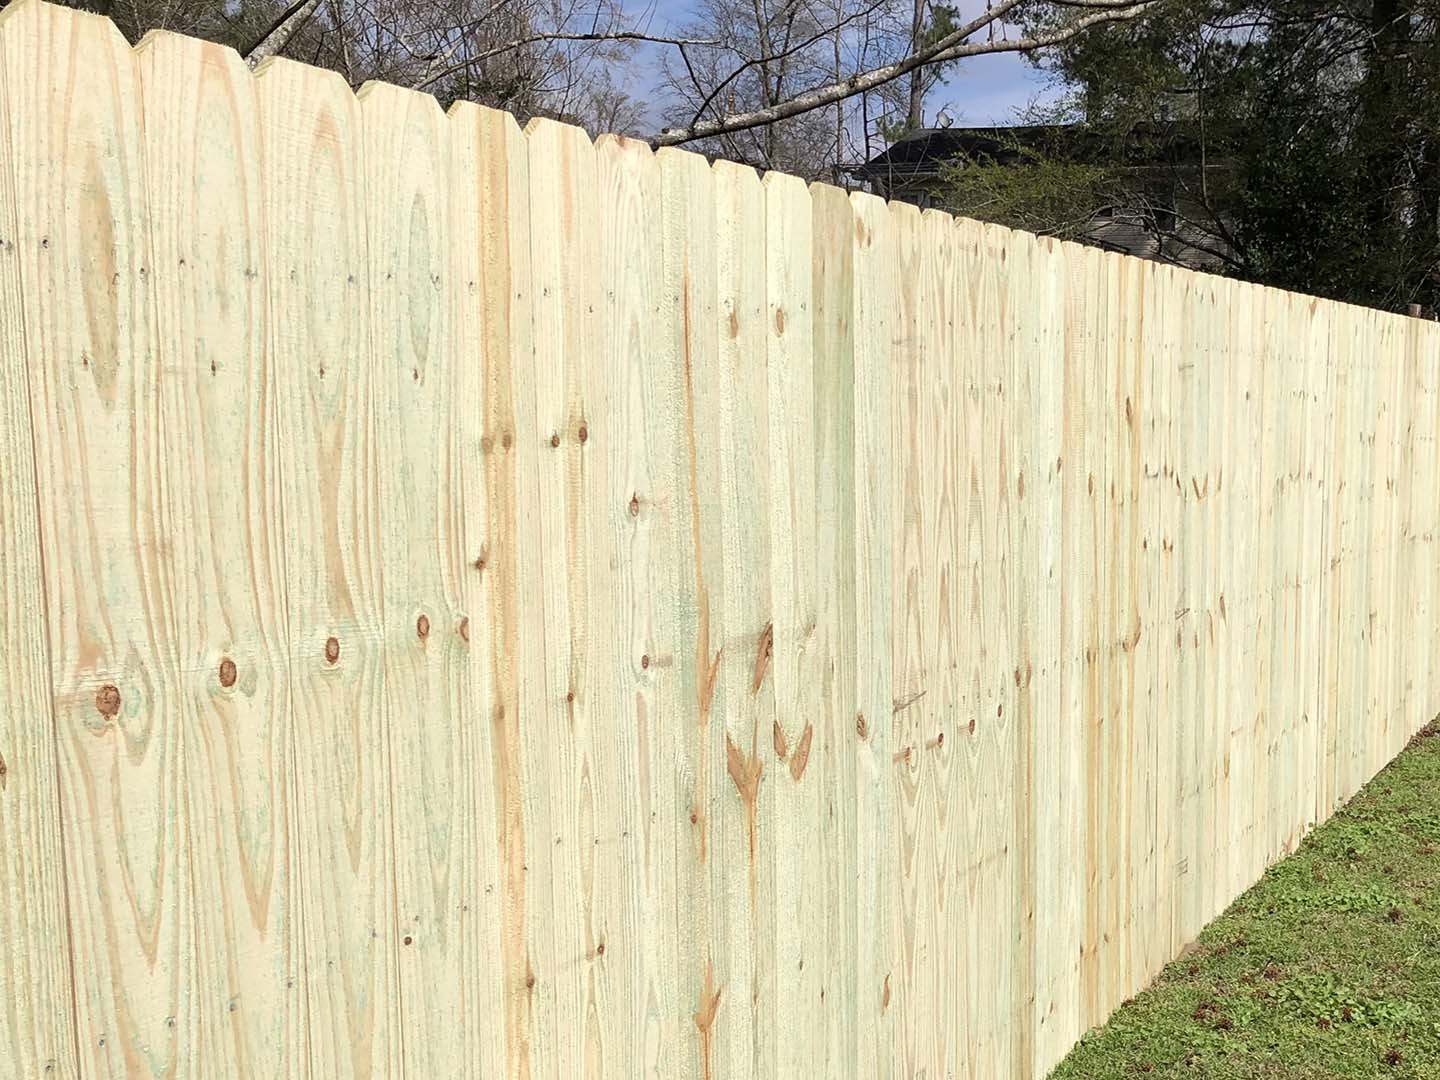 Pelham Al stockade style wood fence